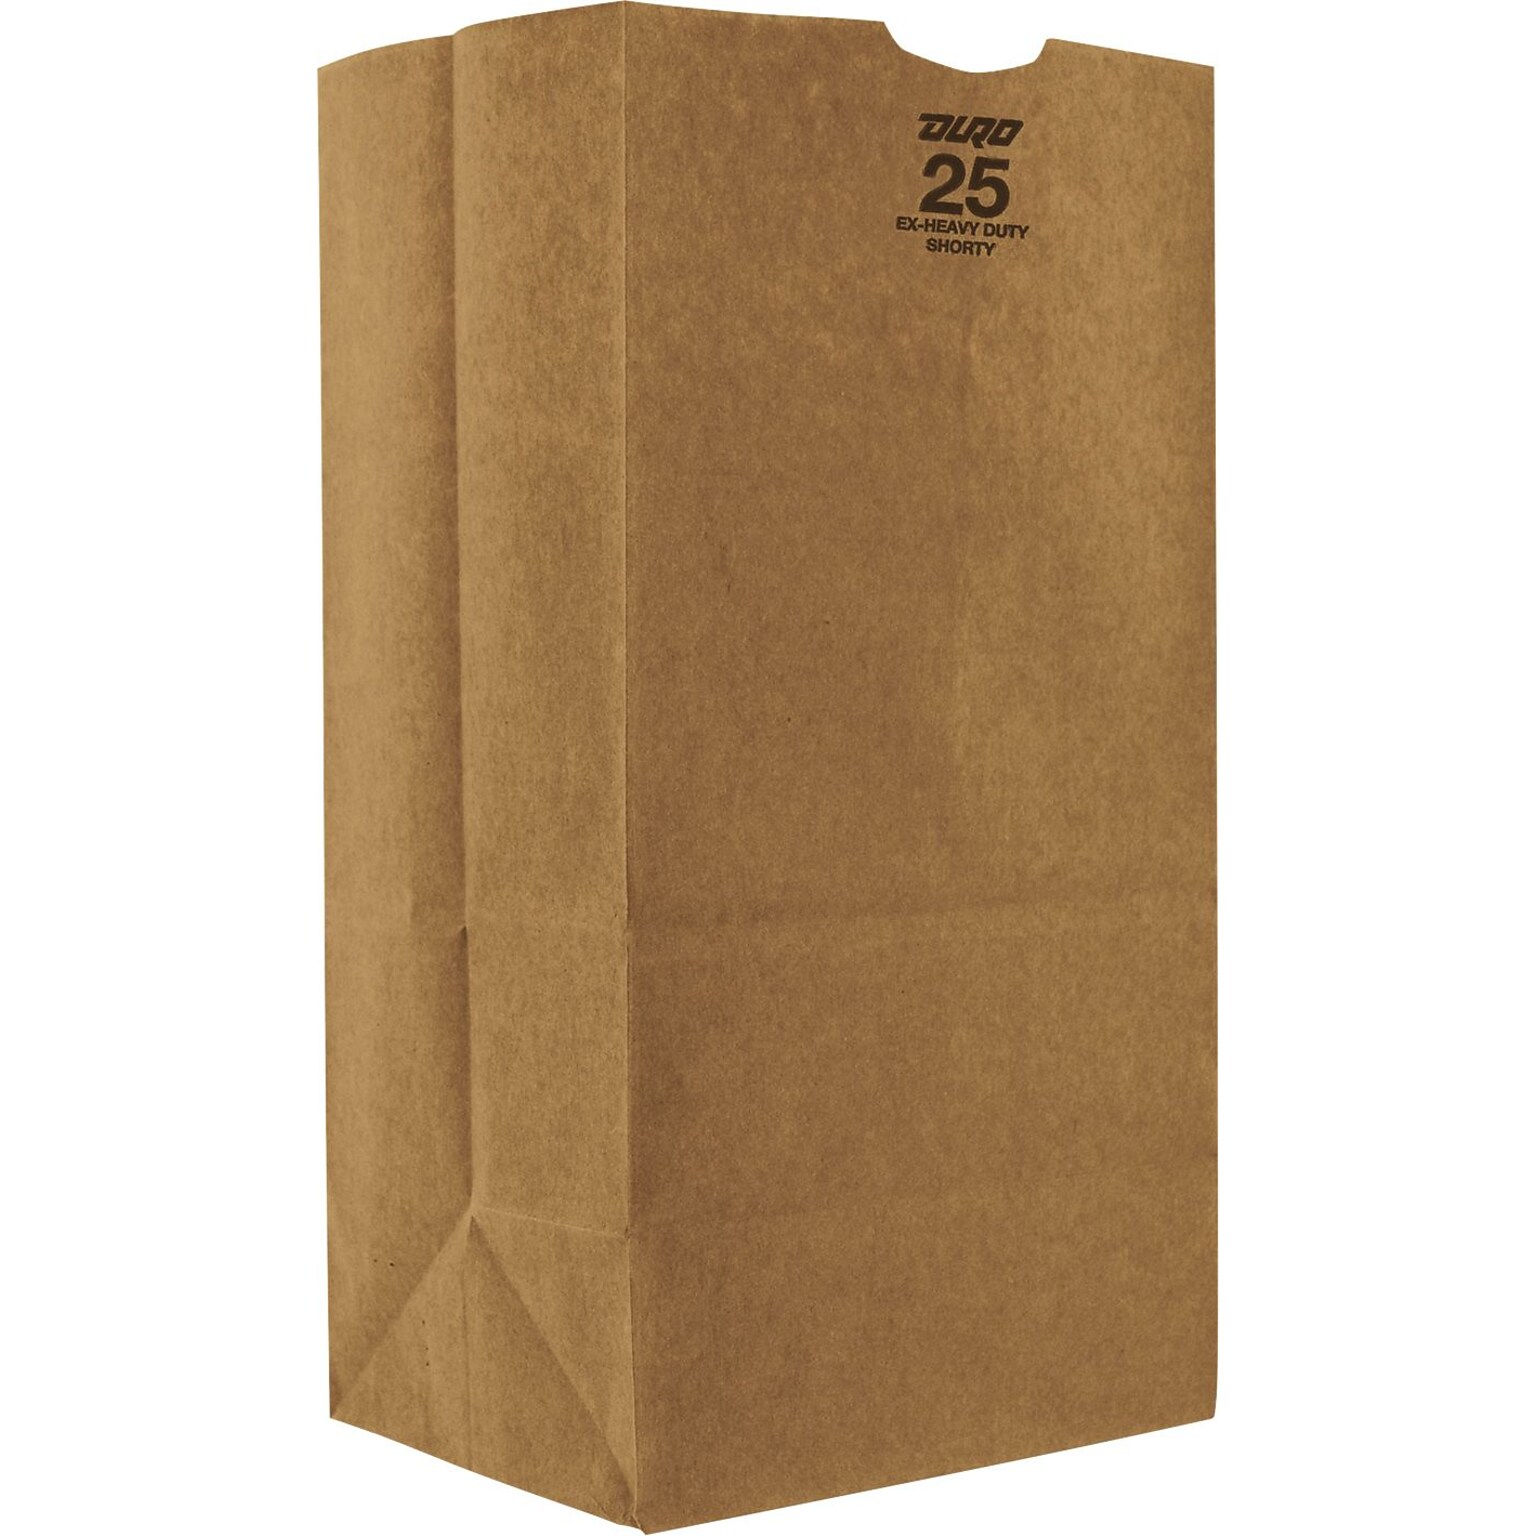 12.5-lb Kraft Paper Bags, Natural, 500/Carton